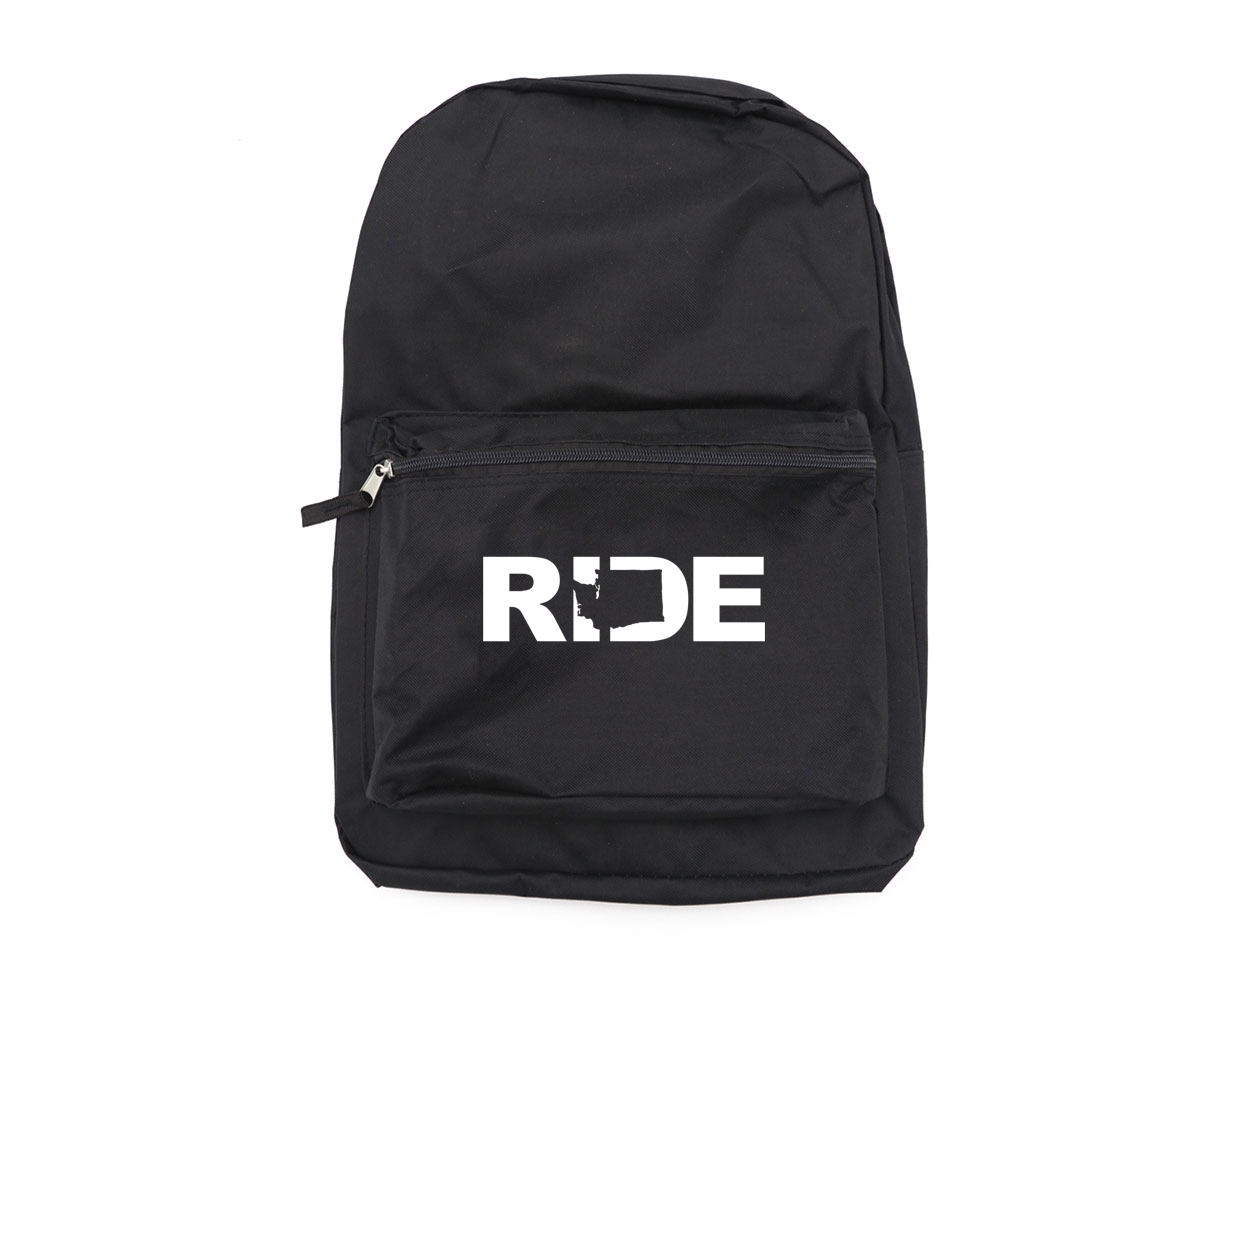 Ride Washington Classic Backpack (White Logo)